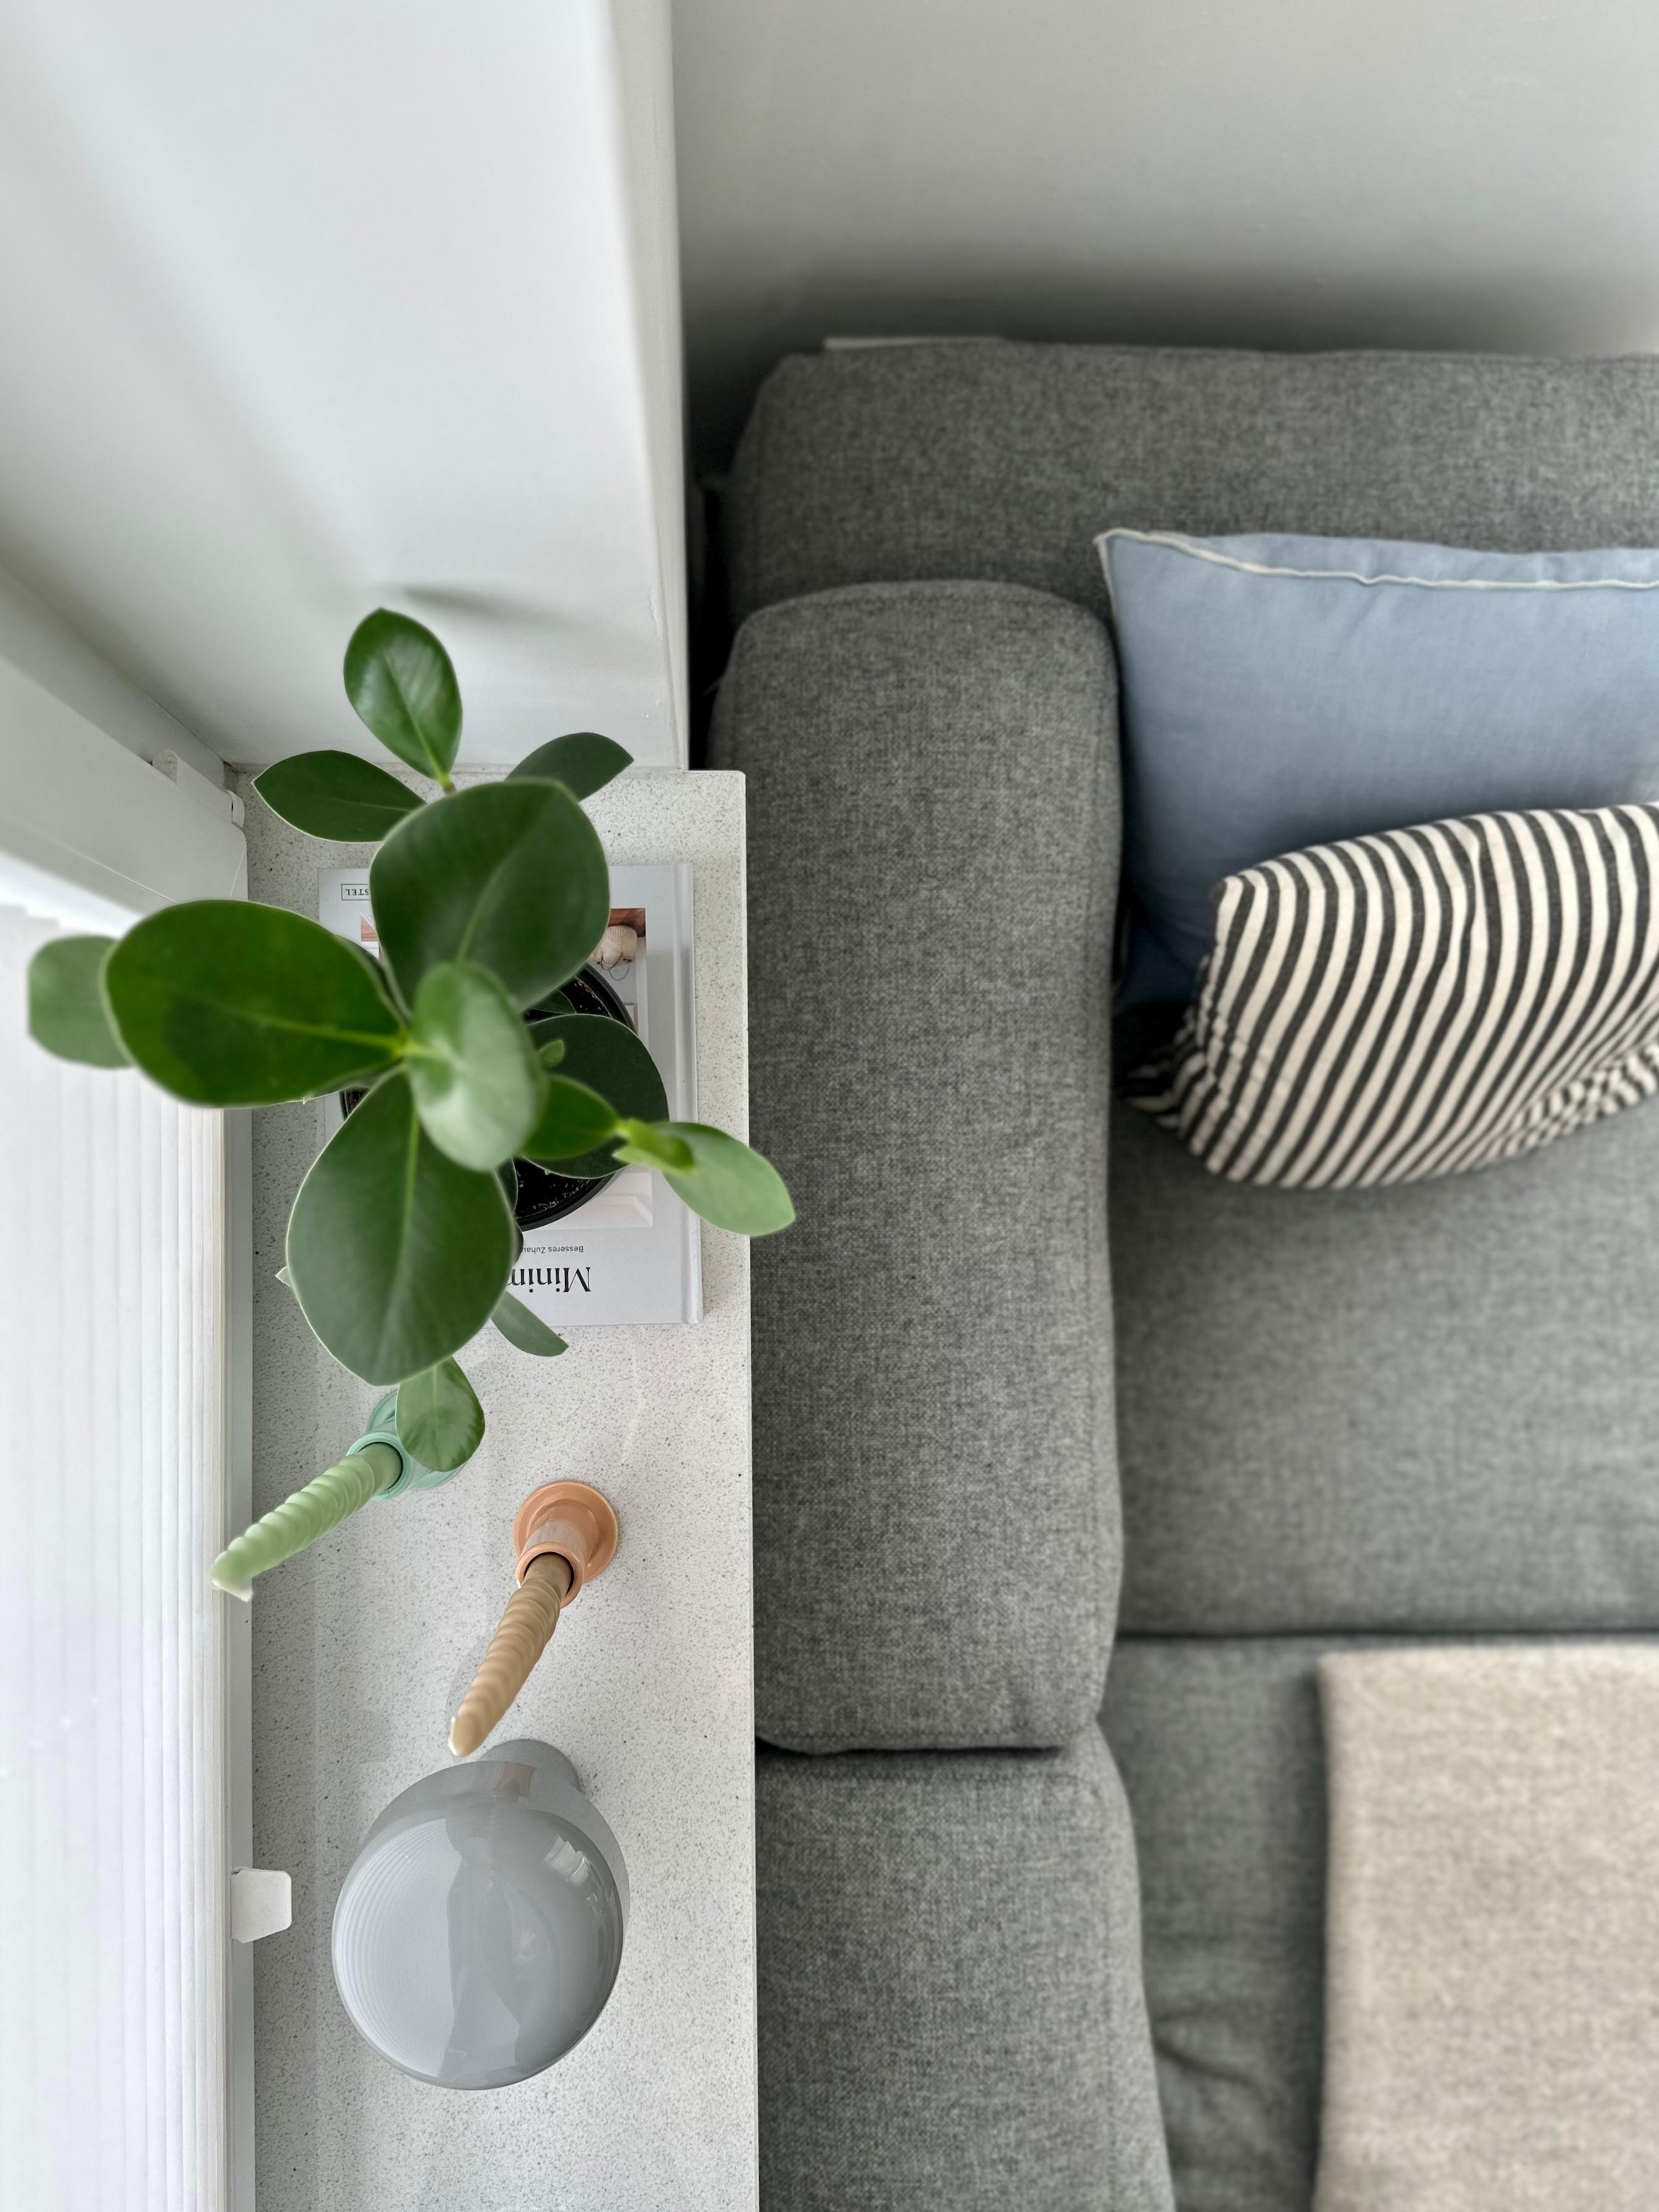 #wohnzimmer #sofa #haydesign #perspektivwechsel #floslampe #kerzenhalter #pflanzenliebe #couchliebt #sofakissen #hmhome